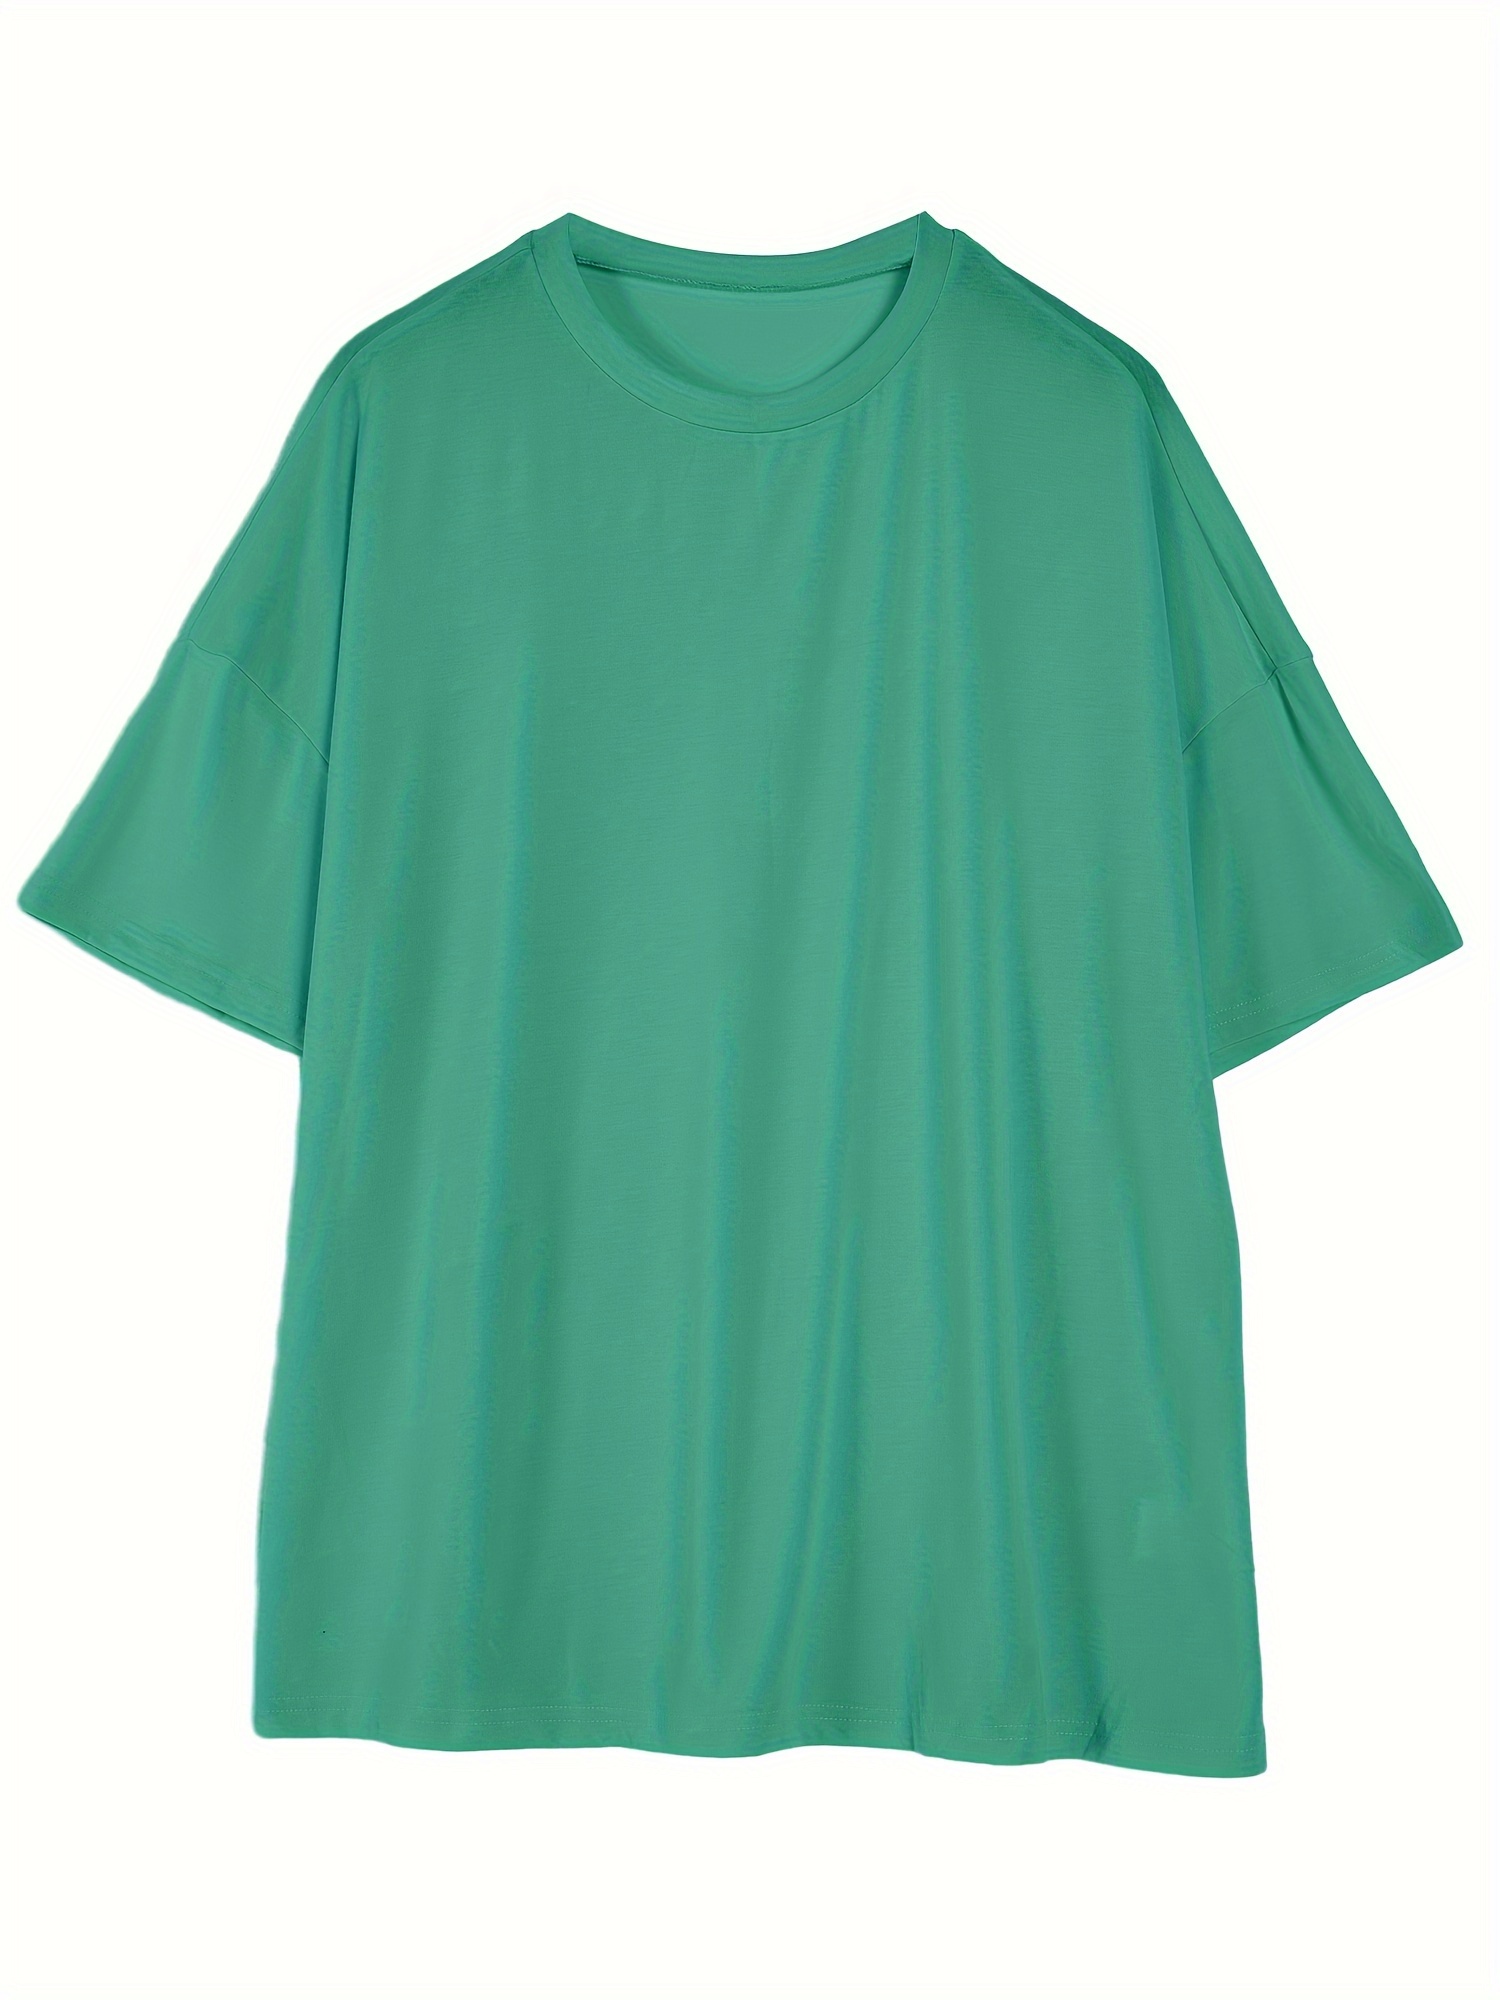 Lauweion Women Solid Basic Oversized T Shirt Short Sleeve Round